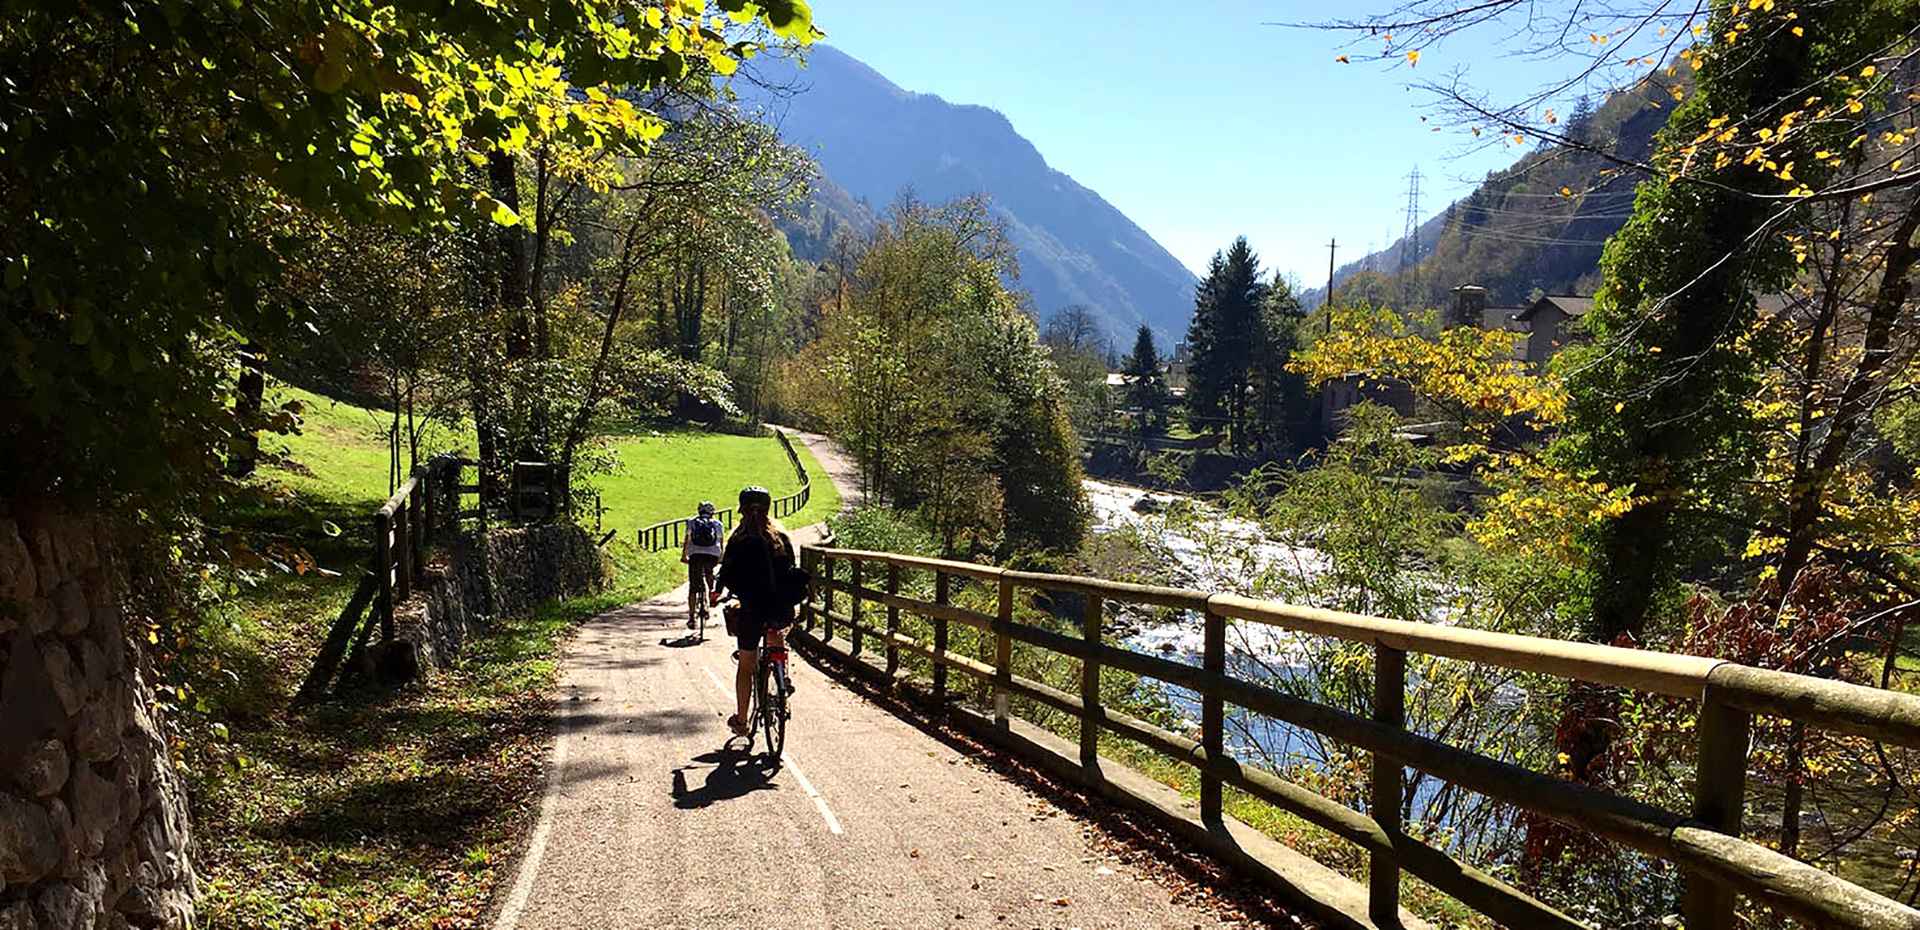 Tutti in sella con “arte sui pedali”,  Il viaggio dalle bellezze di Bergamo fino all’Alta Valle Brembana